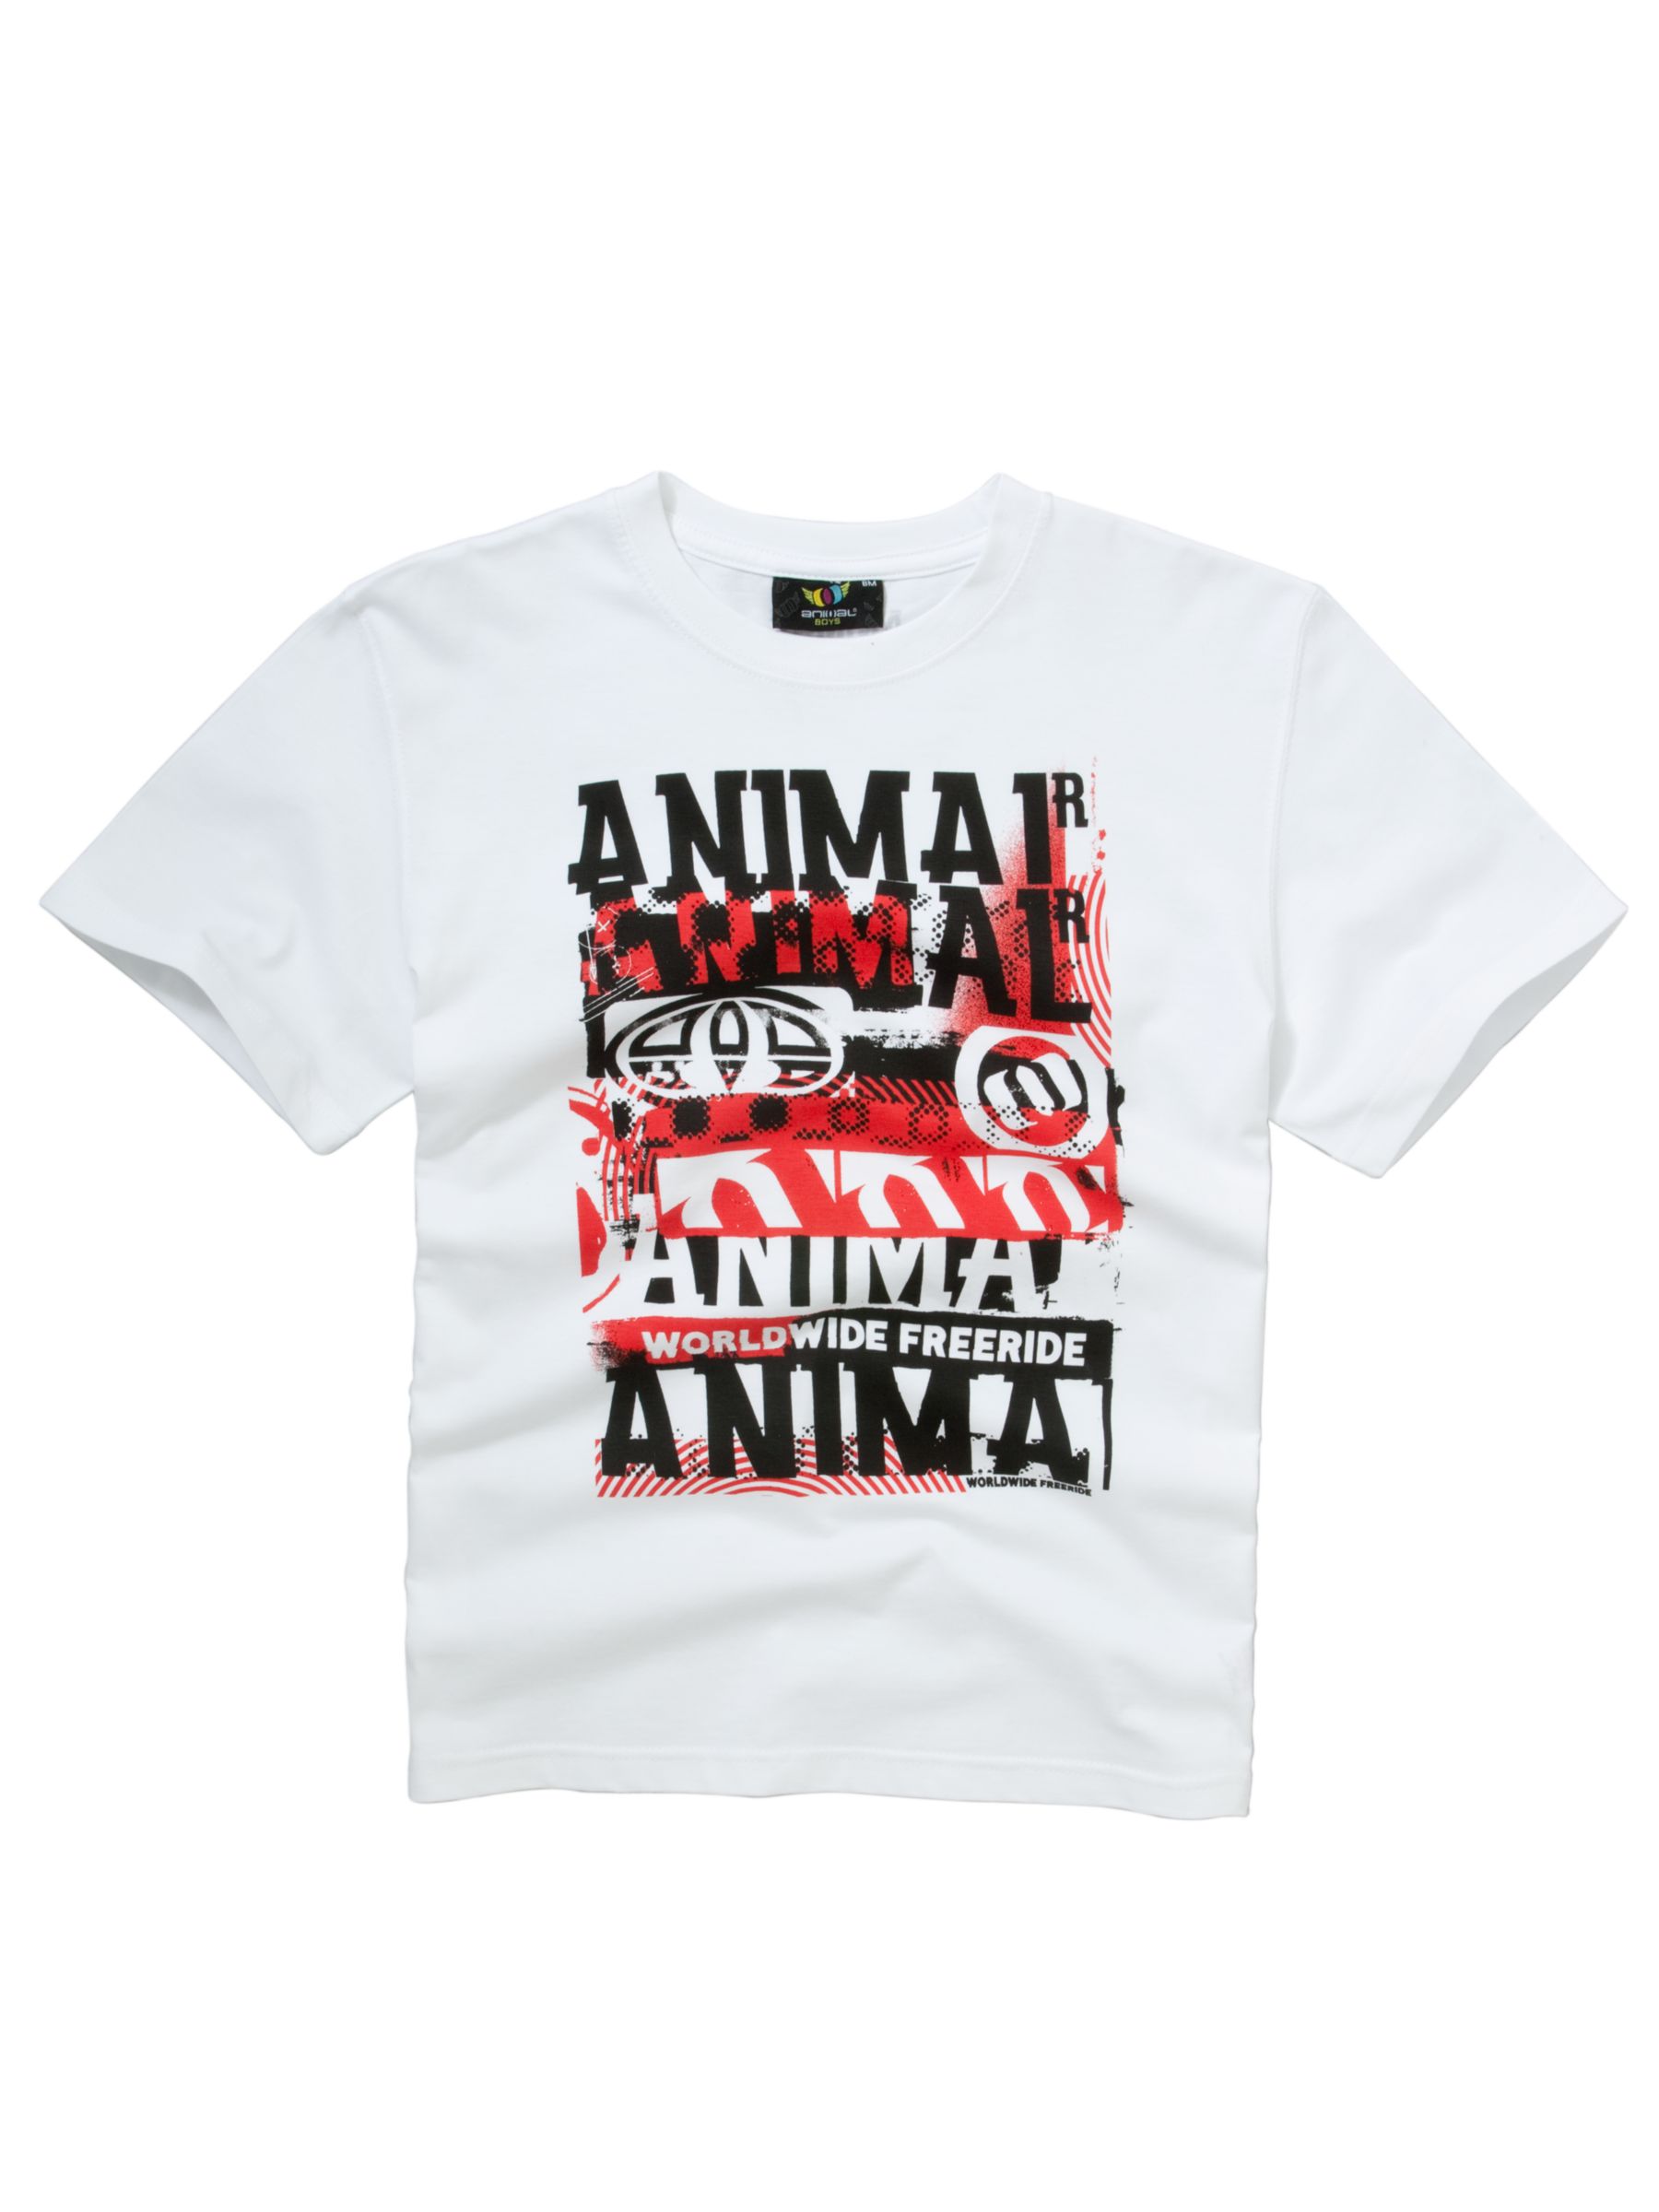 Animal Hooves T-Shirt, White